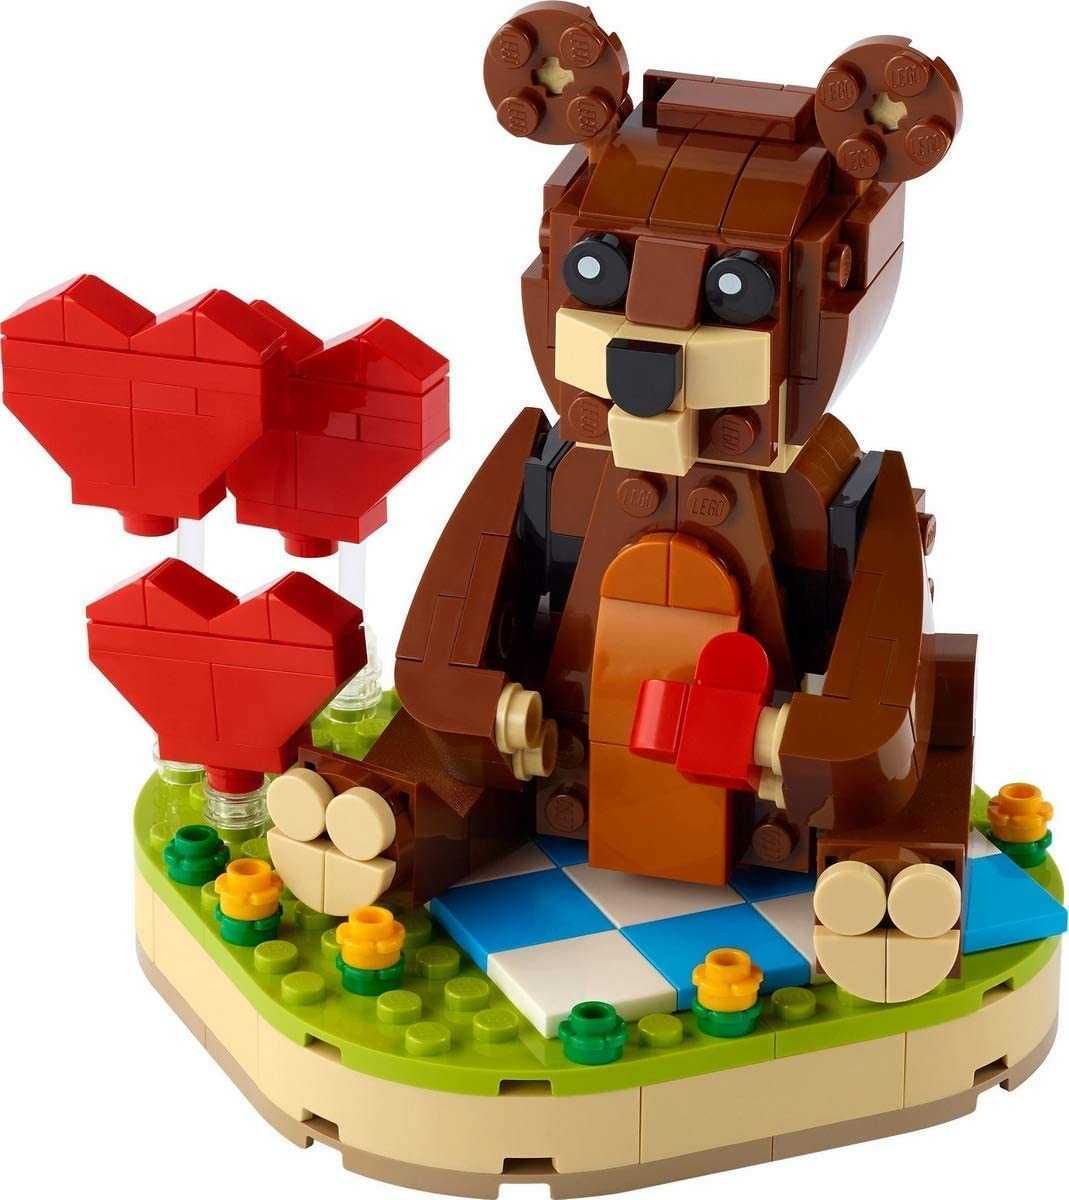 LEGO Creator 40462 Walentynki Brązowy Niedźwiedź